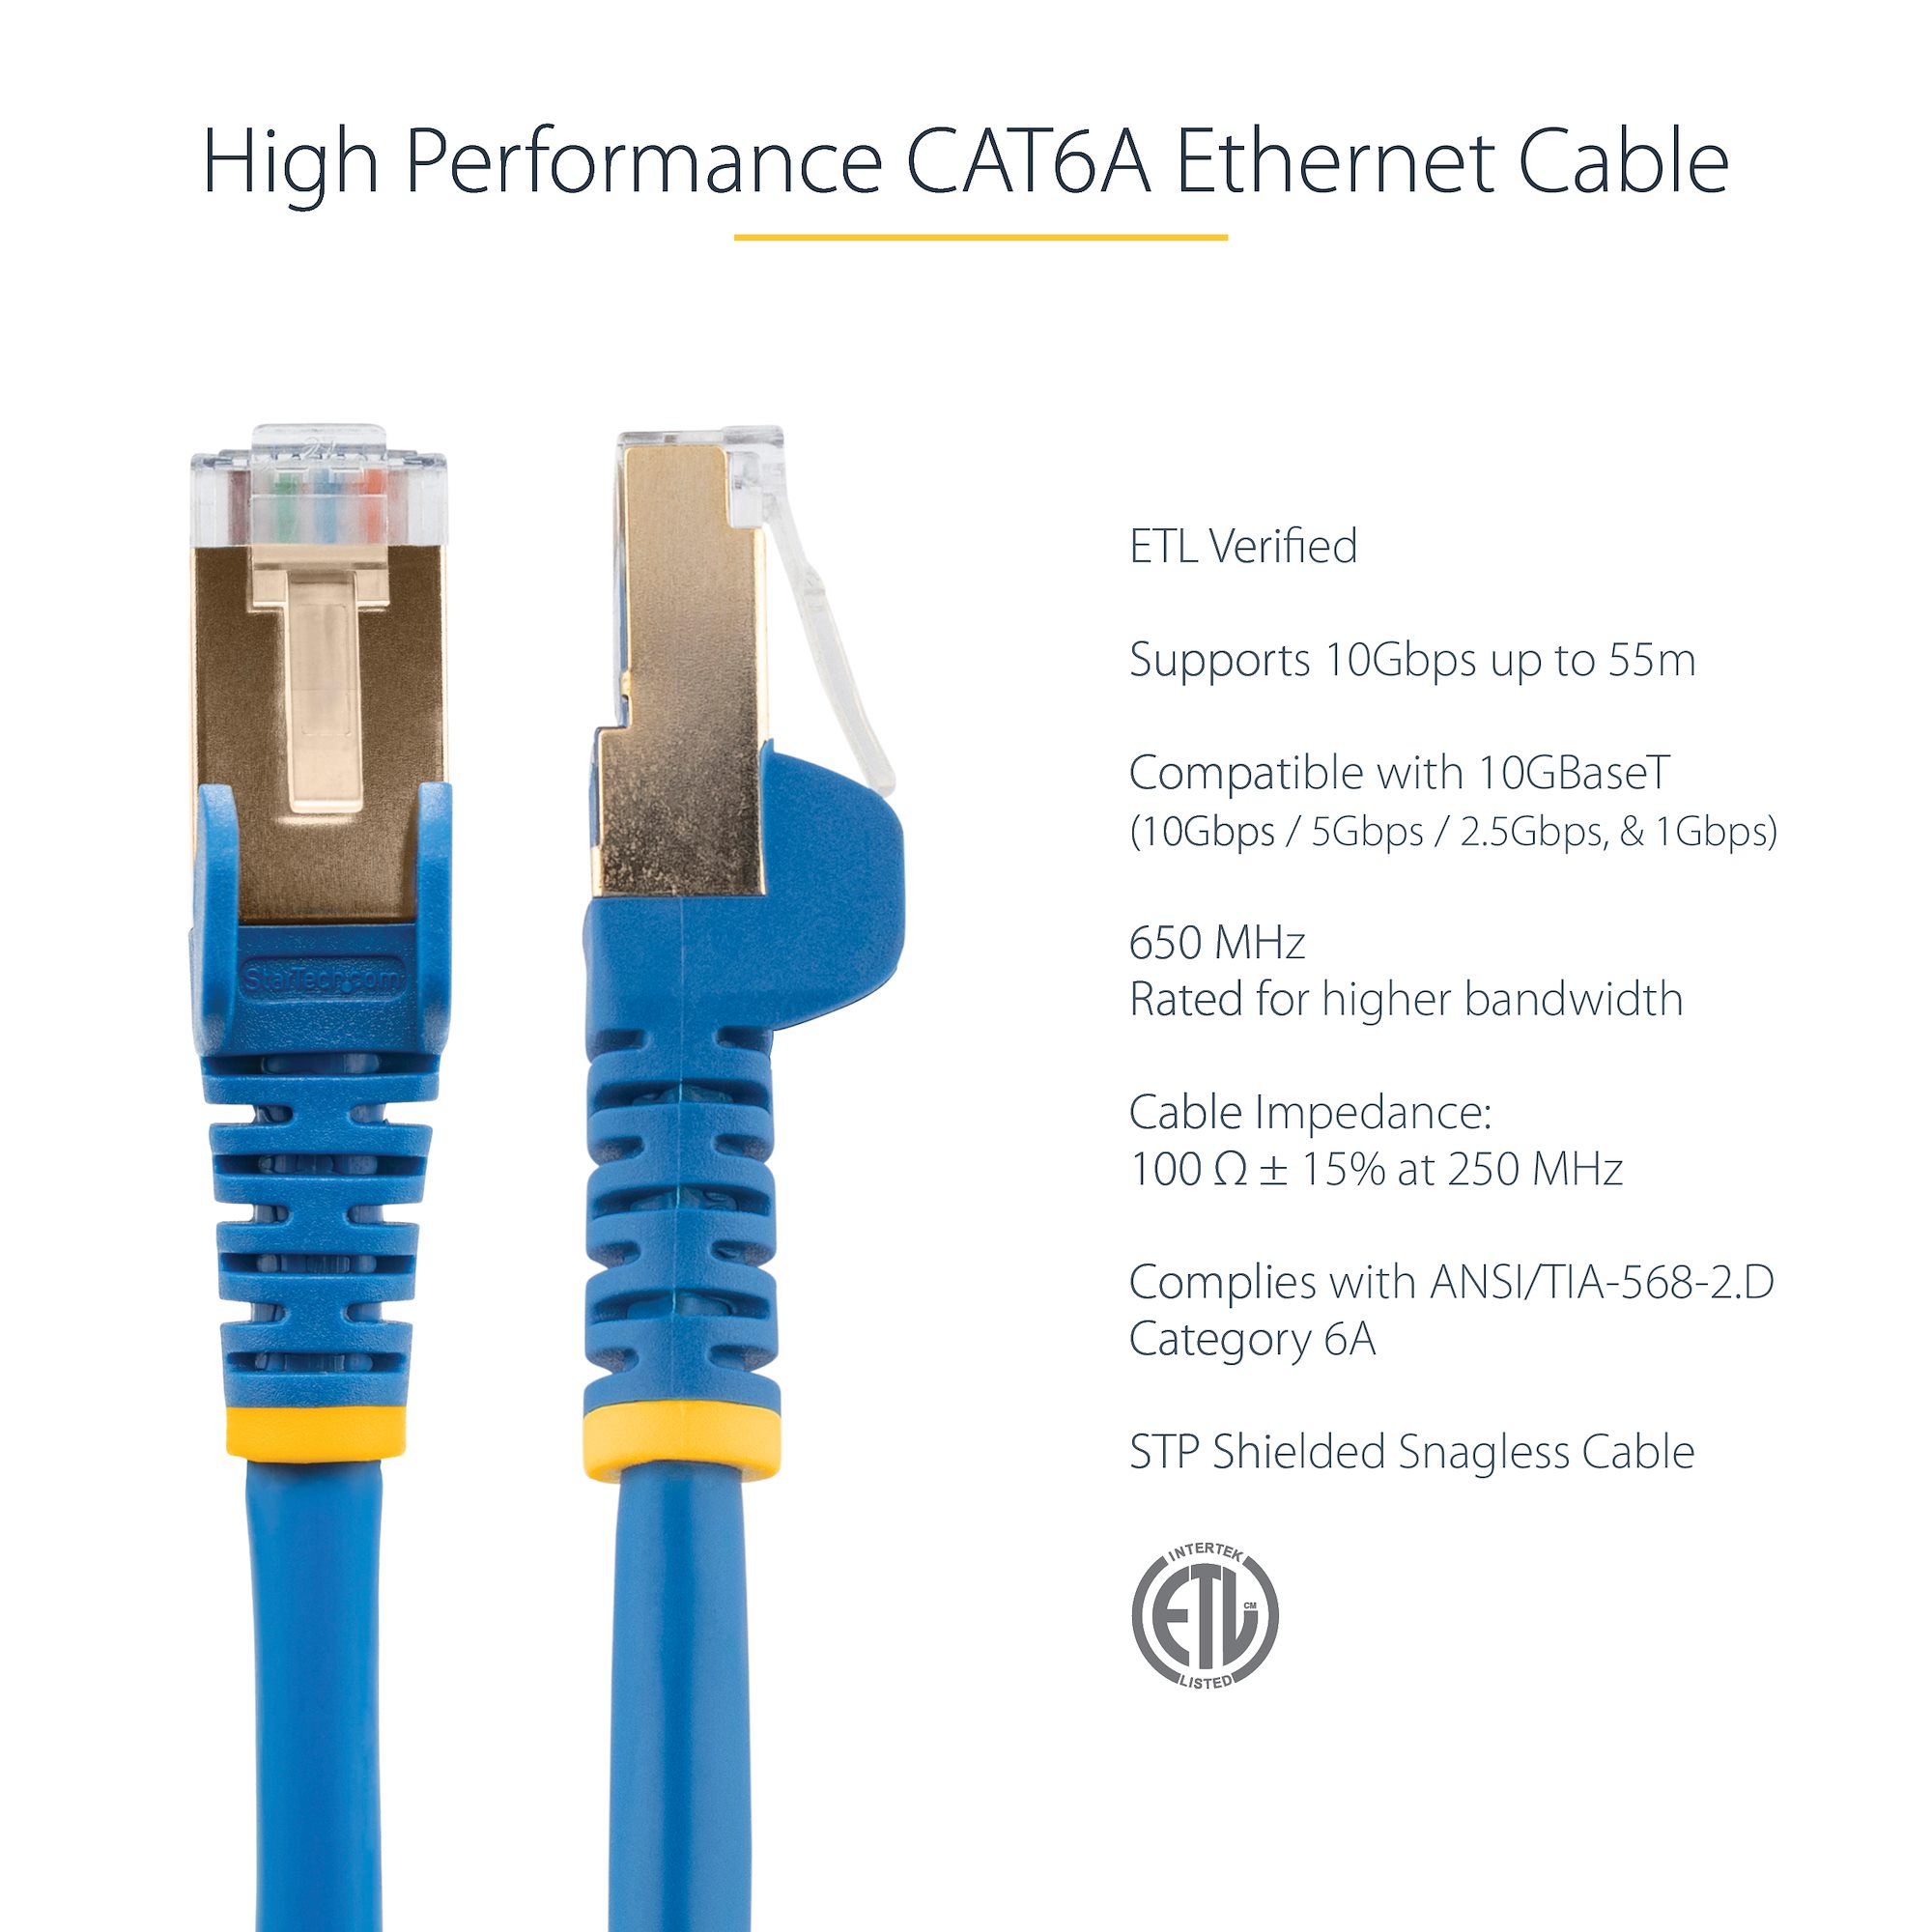 35 ft CAT6a Ethernet Cable - STP Black (C6ASPAT35BK) - Cat 6a Cables, Cables